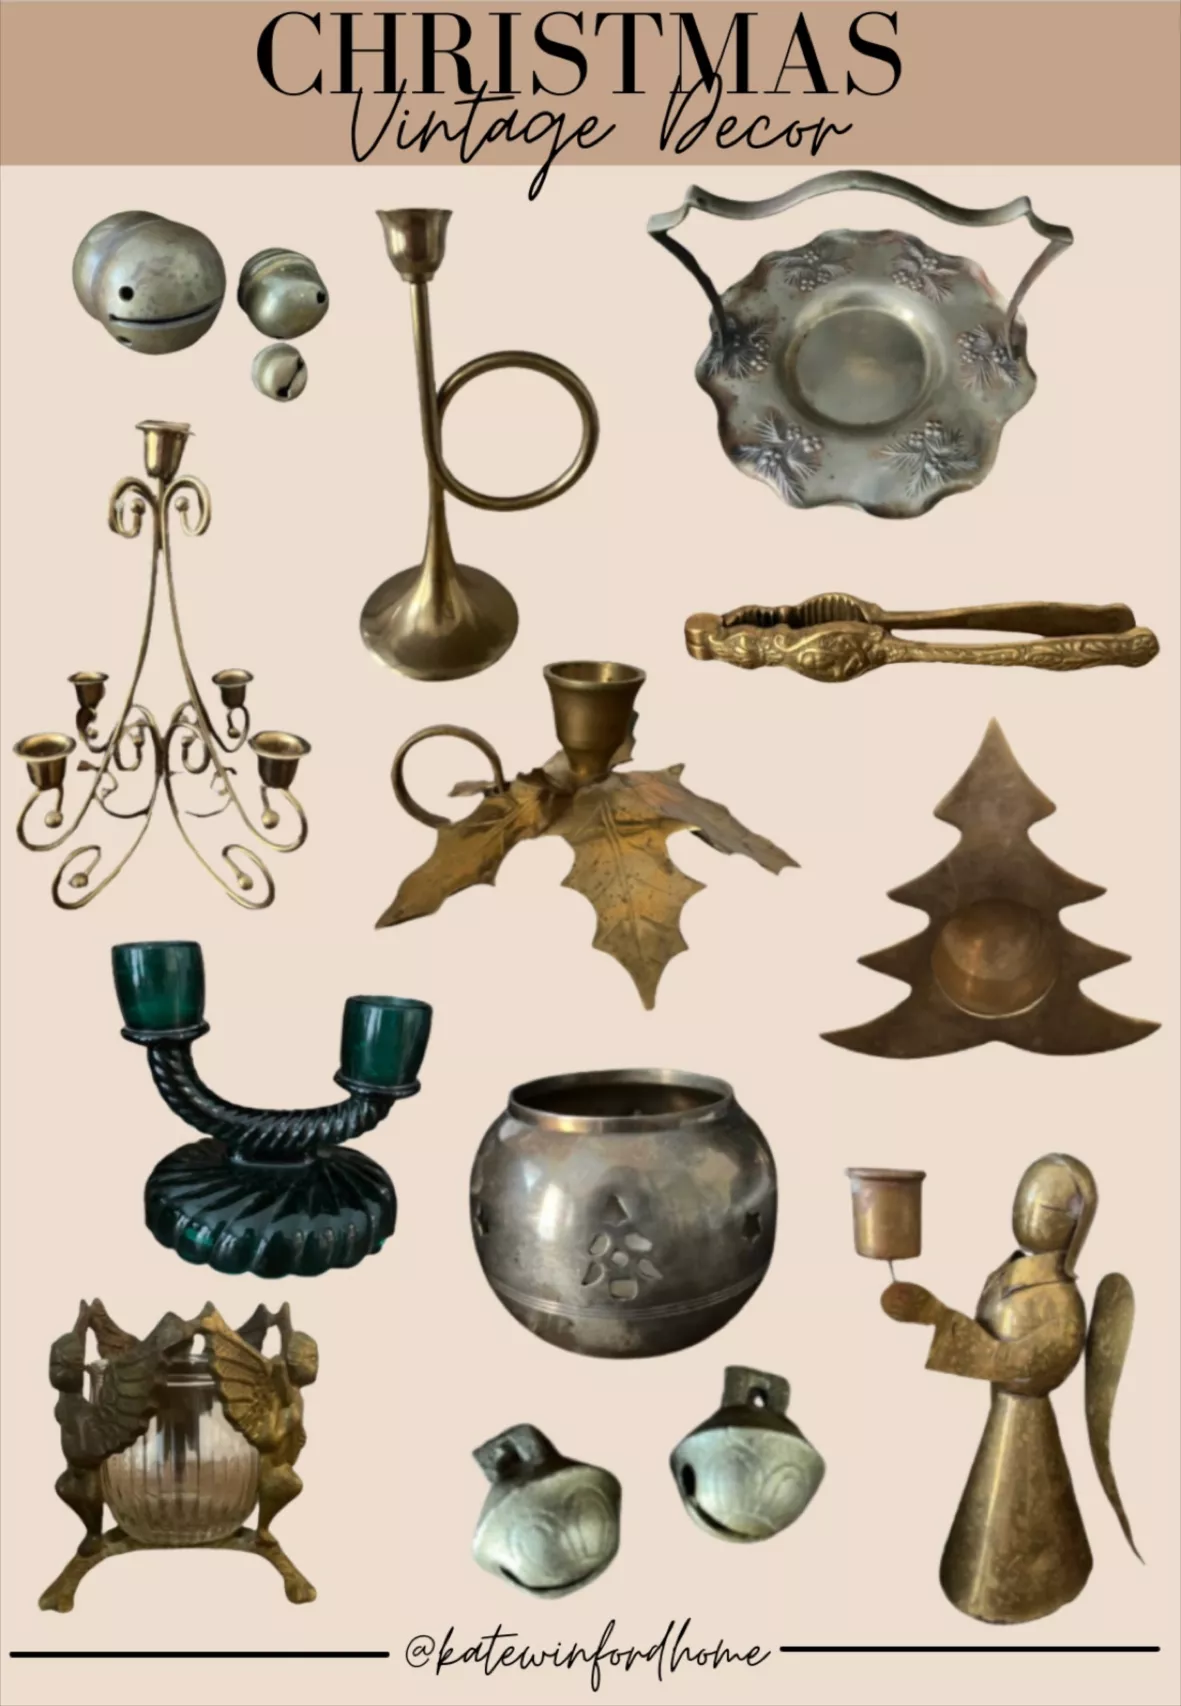 Lot Vintage & Antique Brass Decorative Items